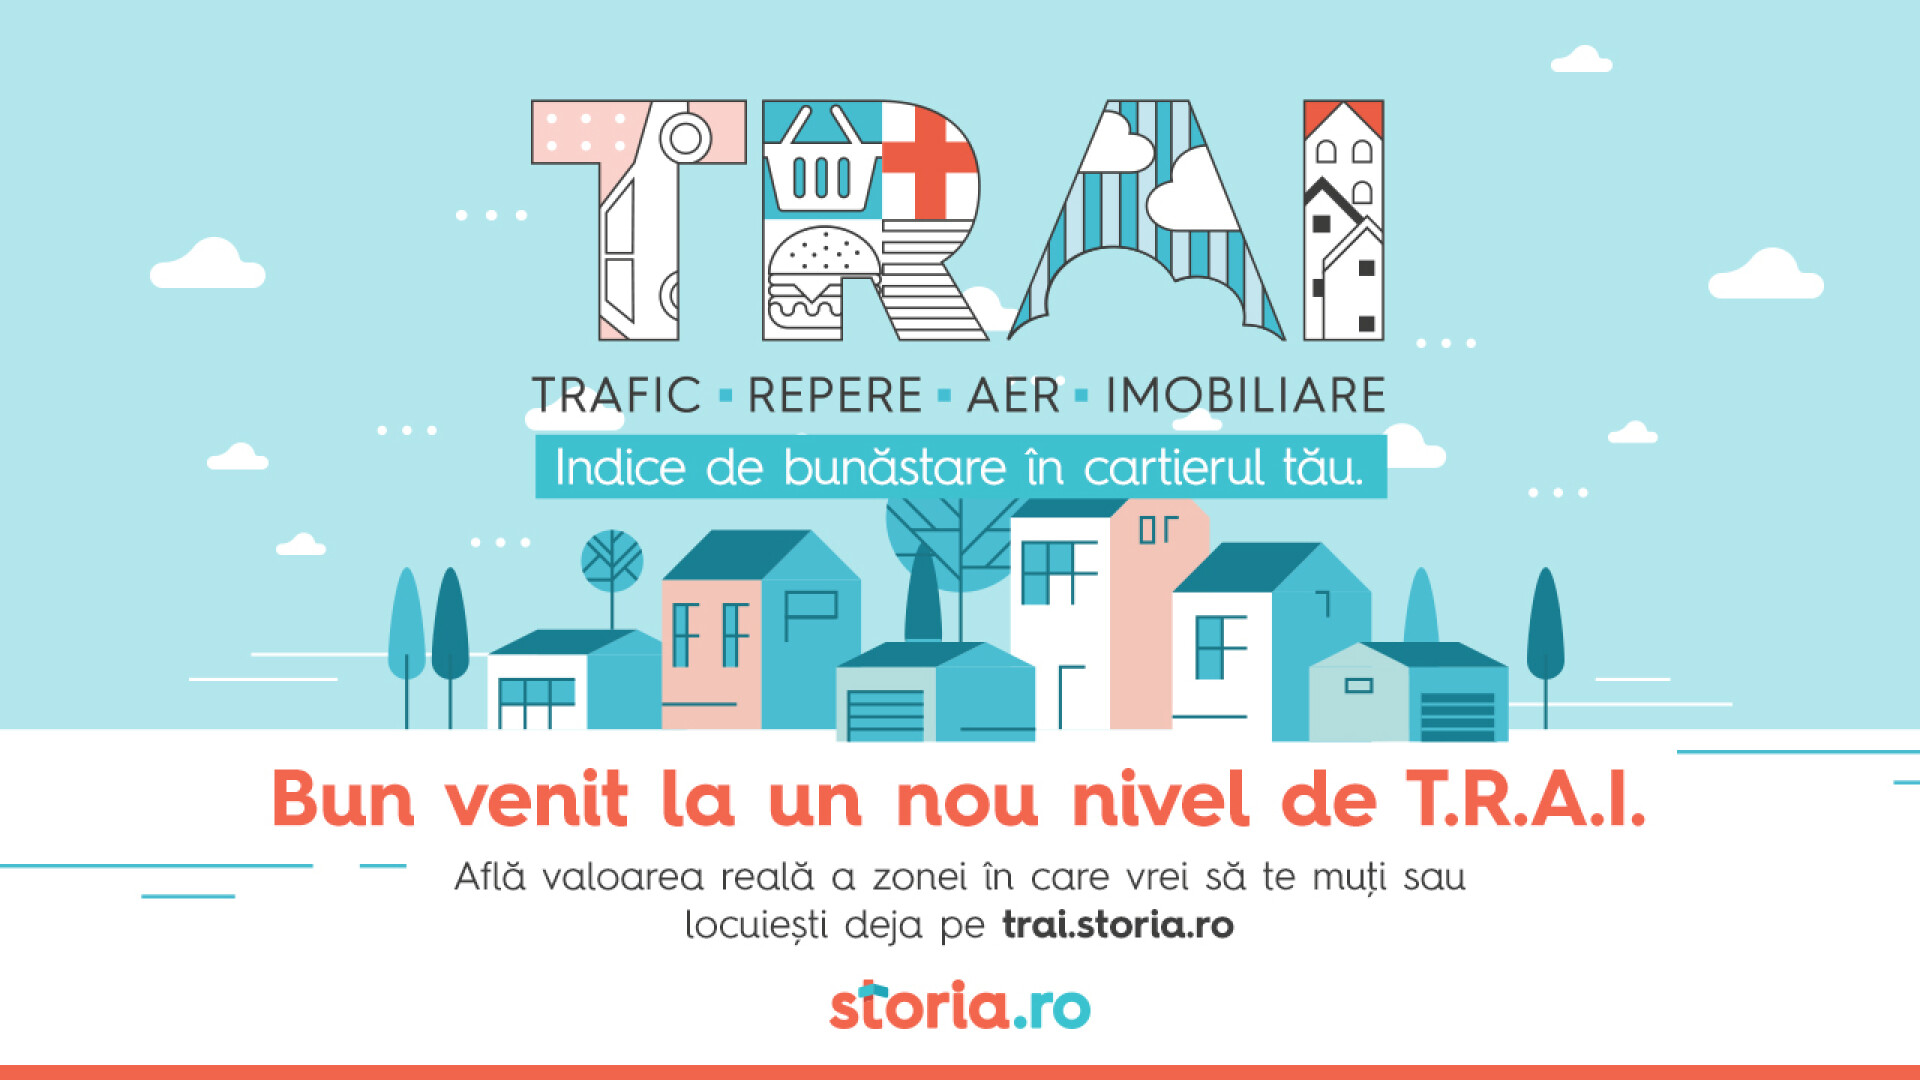 Storia.ro lansează indexul T.R.A.I. prin care măsoară nivelul real de trai din principalele orașe și cartiere ale României